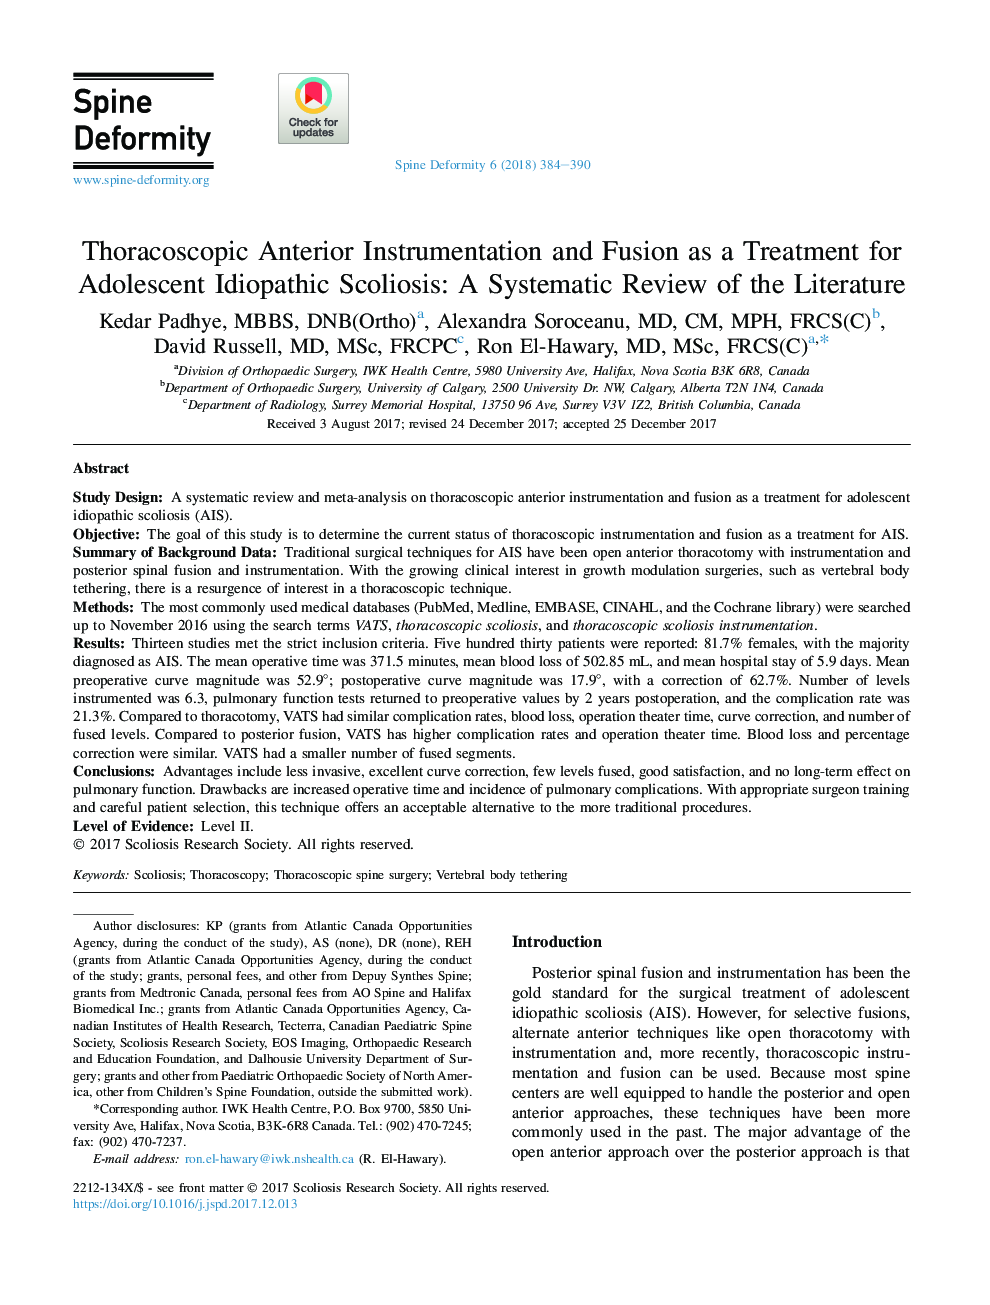 ابزار دقیق توراکوسکوپی قدامی و فیوژن به عنوان درمان برای اسکولیوز ایدیوپاتال نوجوانان: یک بررسی سیستماتیک از ادبیات 